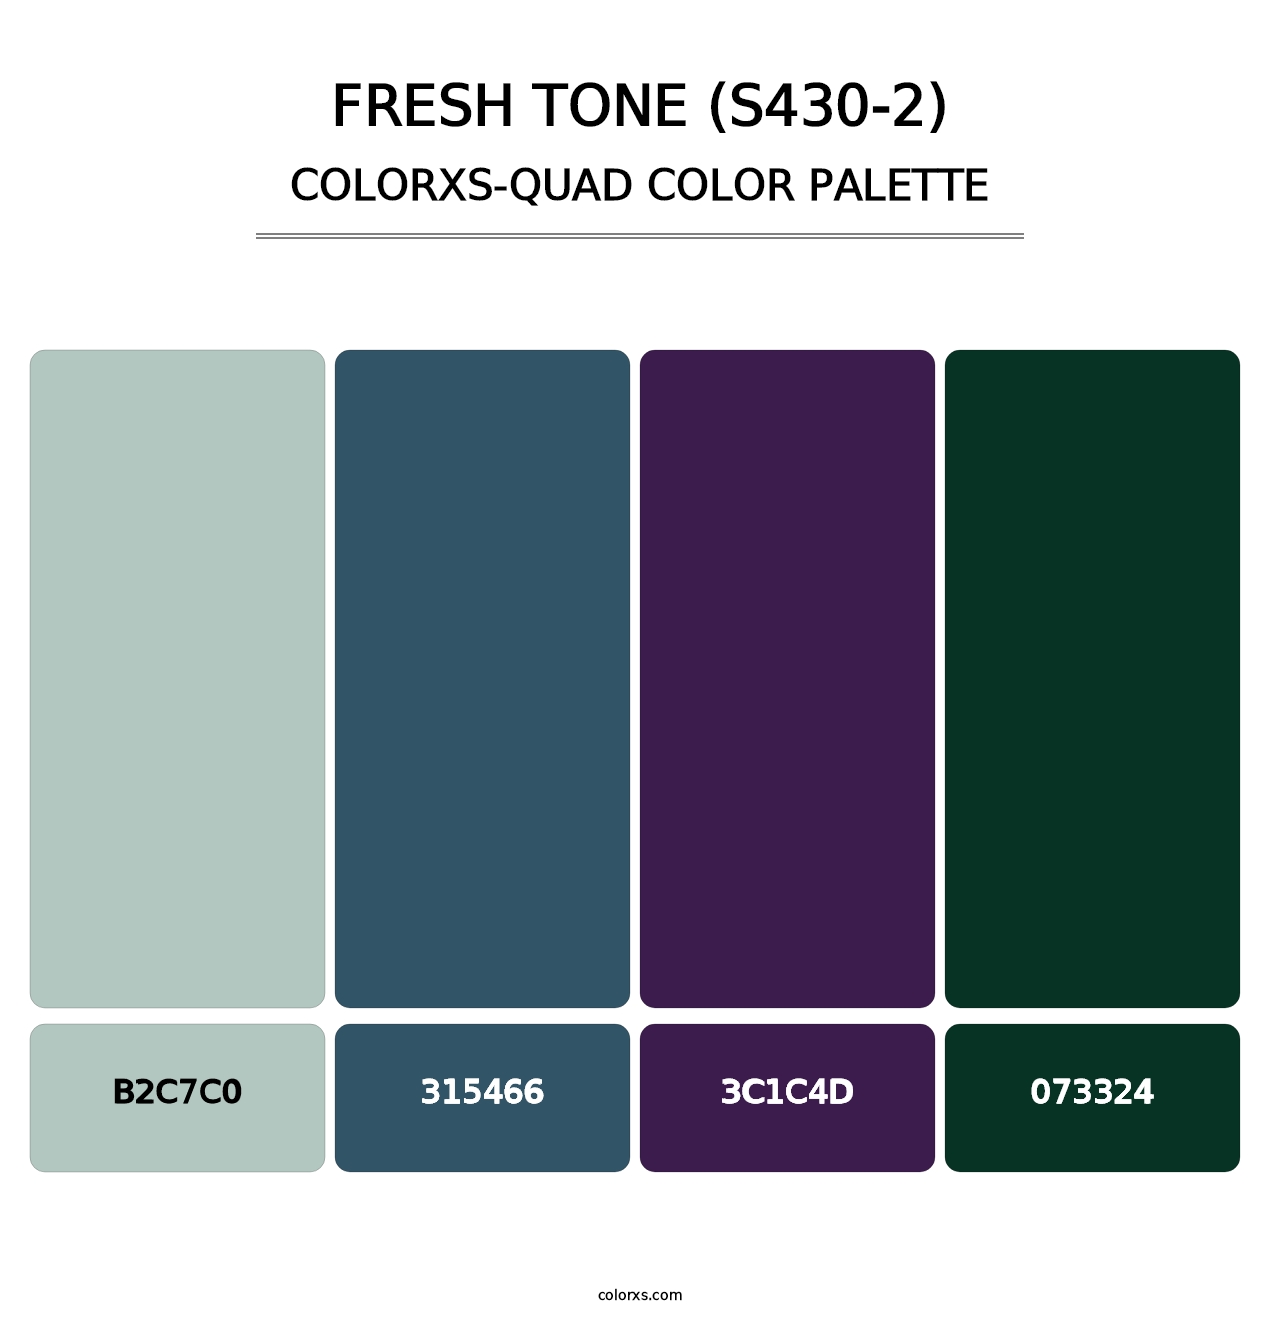 Fresh Tone (S430-2) - Colorxs Quad Palette